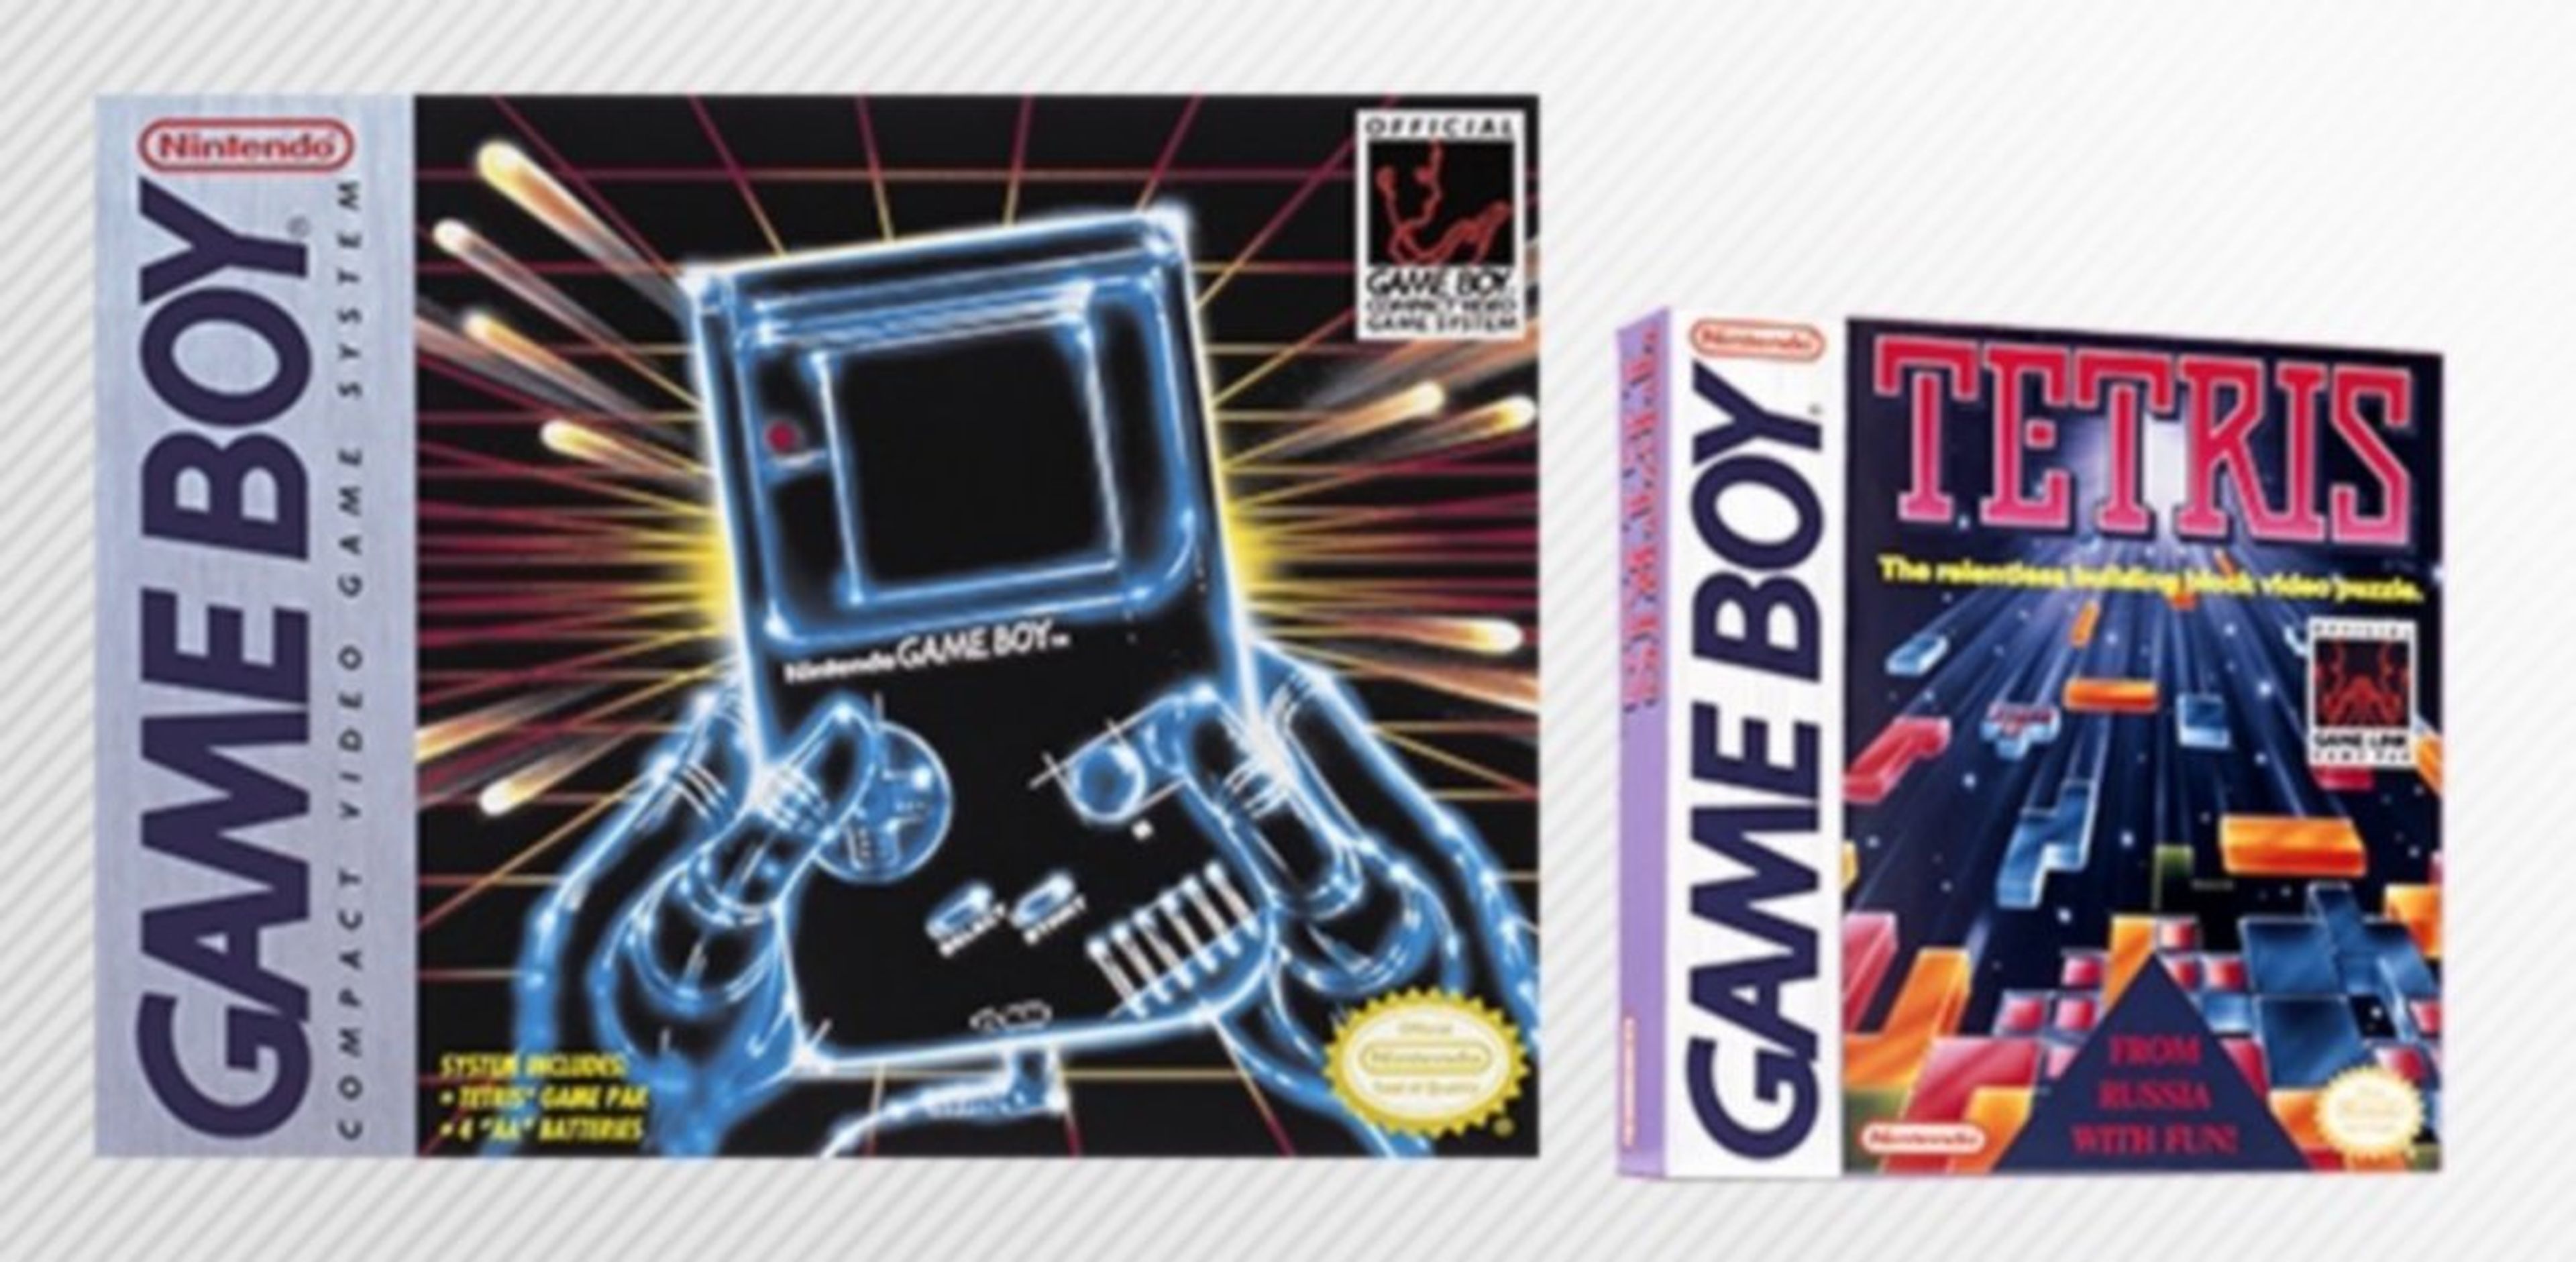 La consola Nintendo Game Boy cumple 30 años